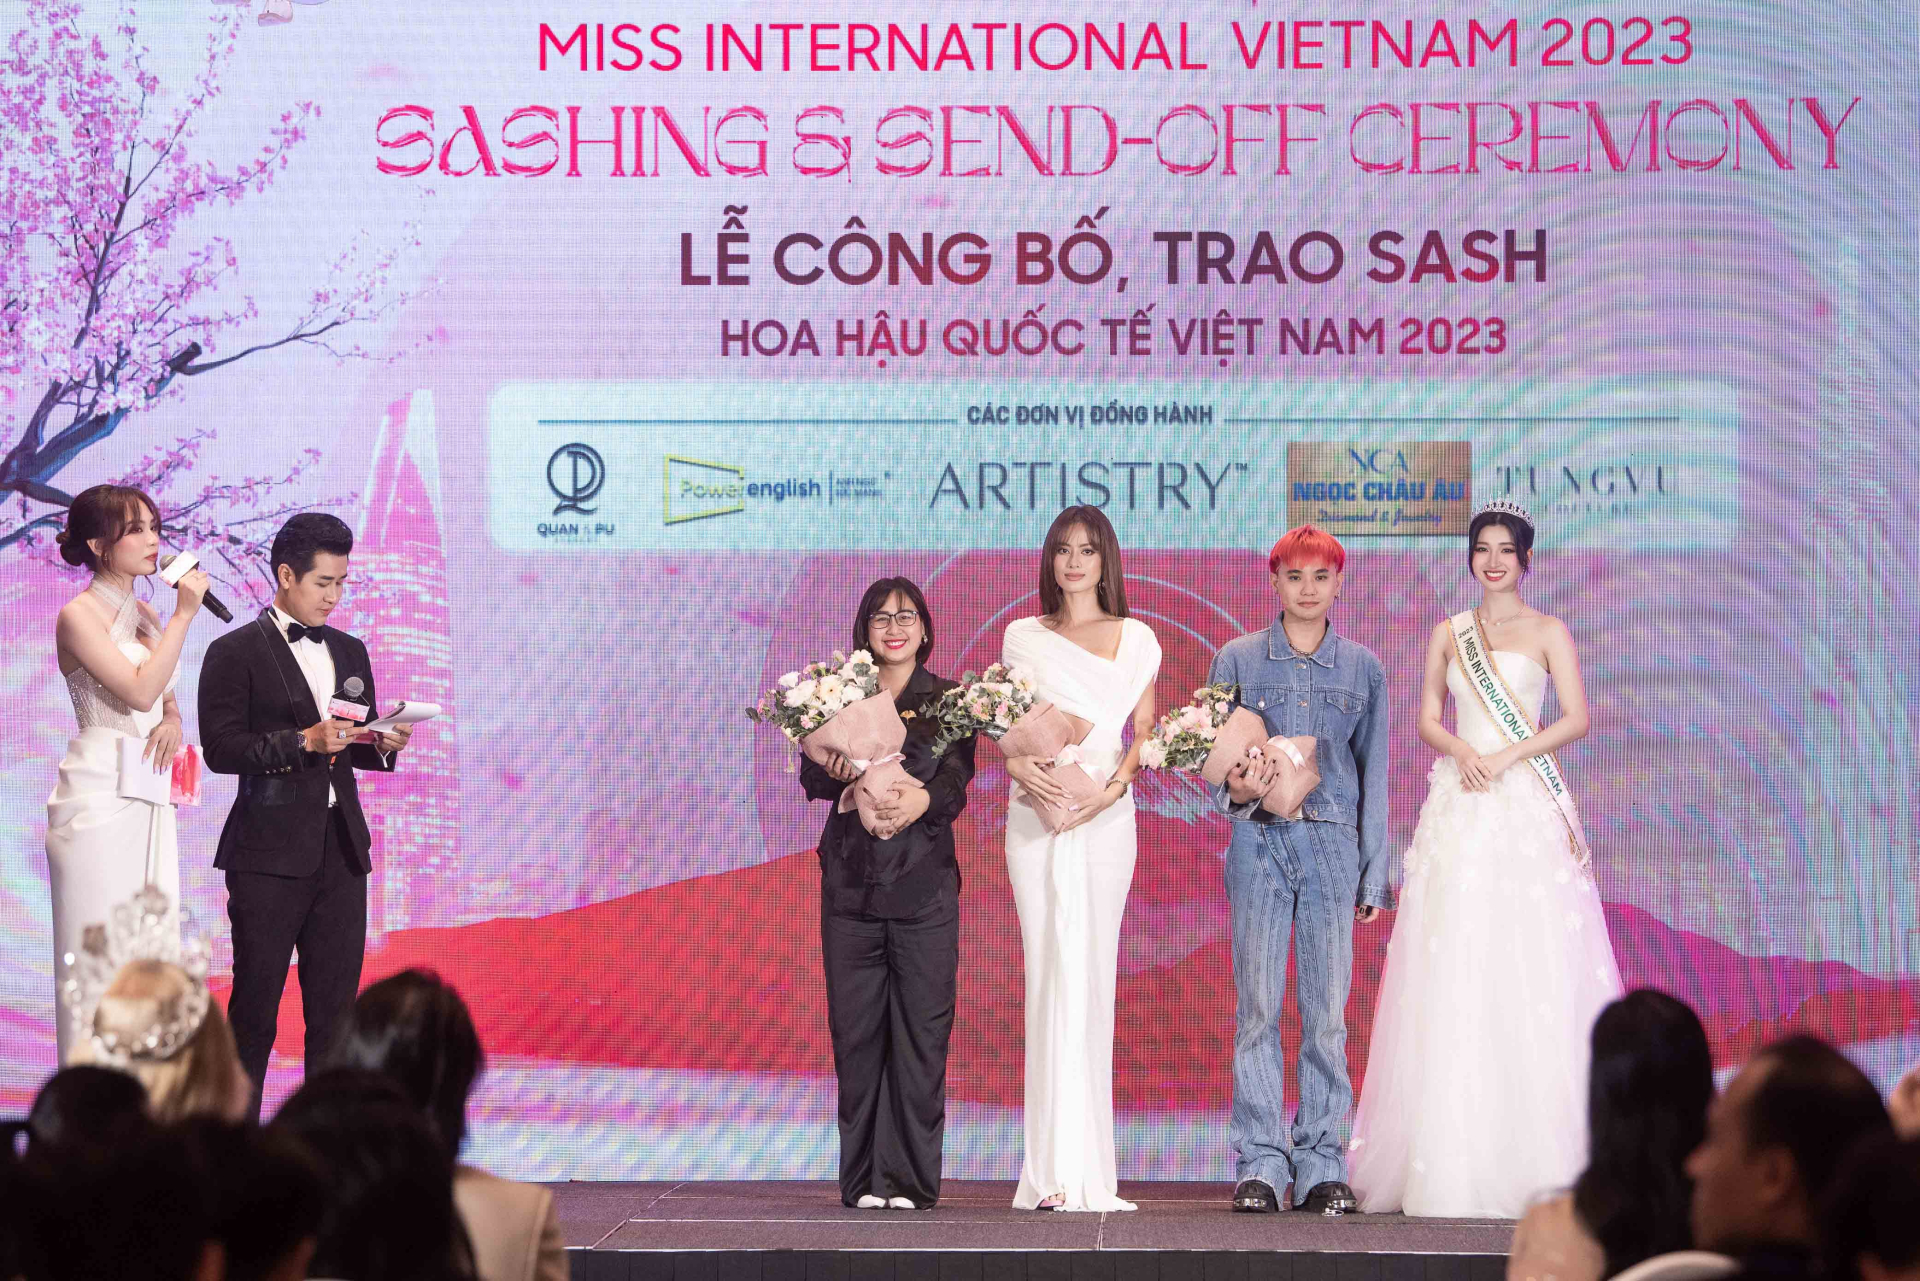 Bên cạnh đó, sự tự tin và quyền lực đến từ vị trí Hoa hậu đã giúp Mai Phương điều hướng chương trình một cách chuyên nghiệp và nhất quán, chứng tỏ mình là một nàng hậu đa tài.